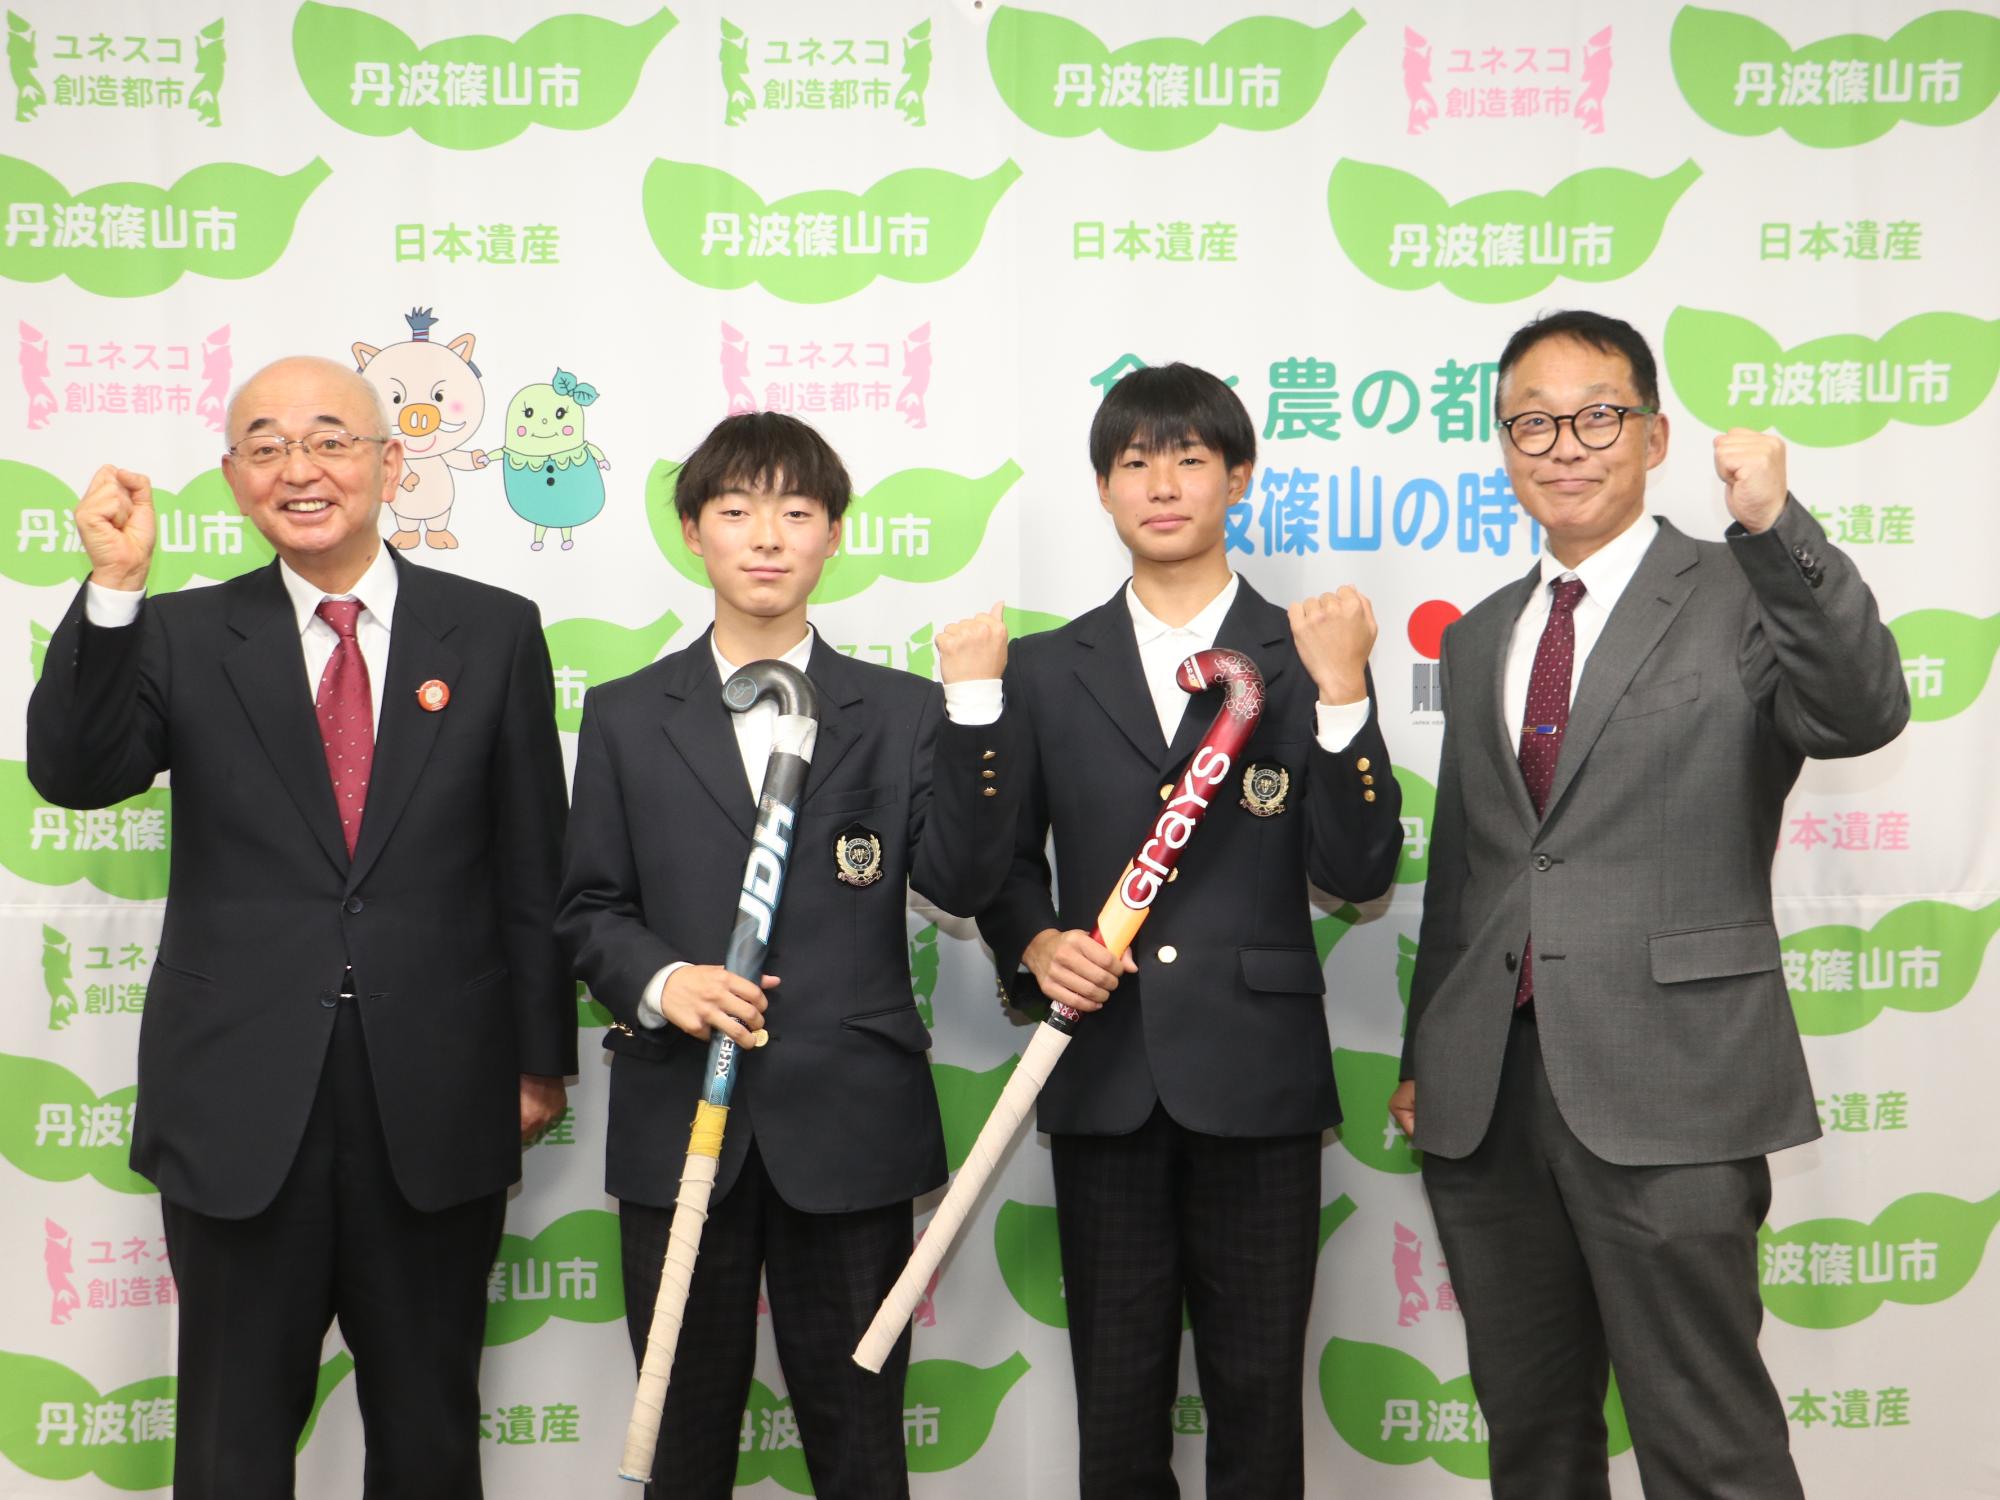 ホッケーのスティックを手に持った田中さんと中井さん、市長、教育長との記念撮影